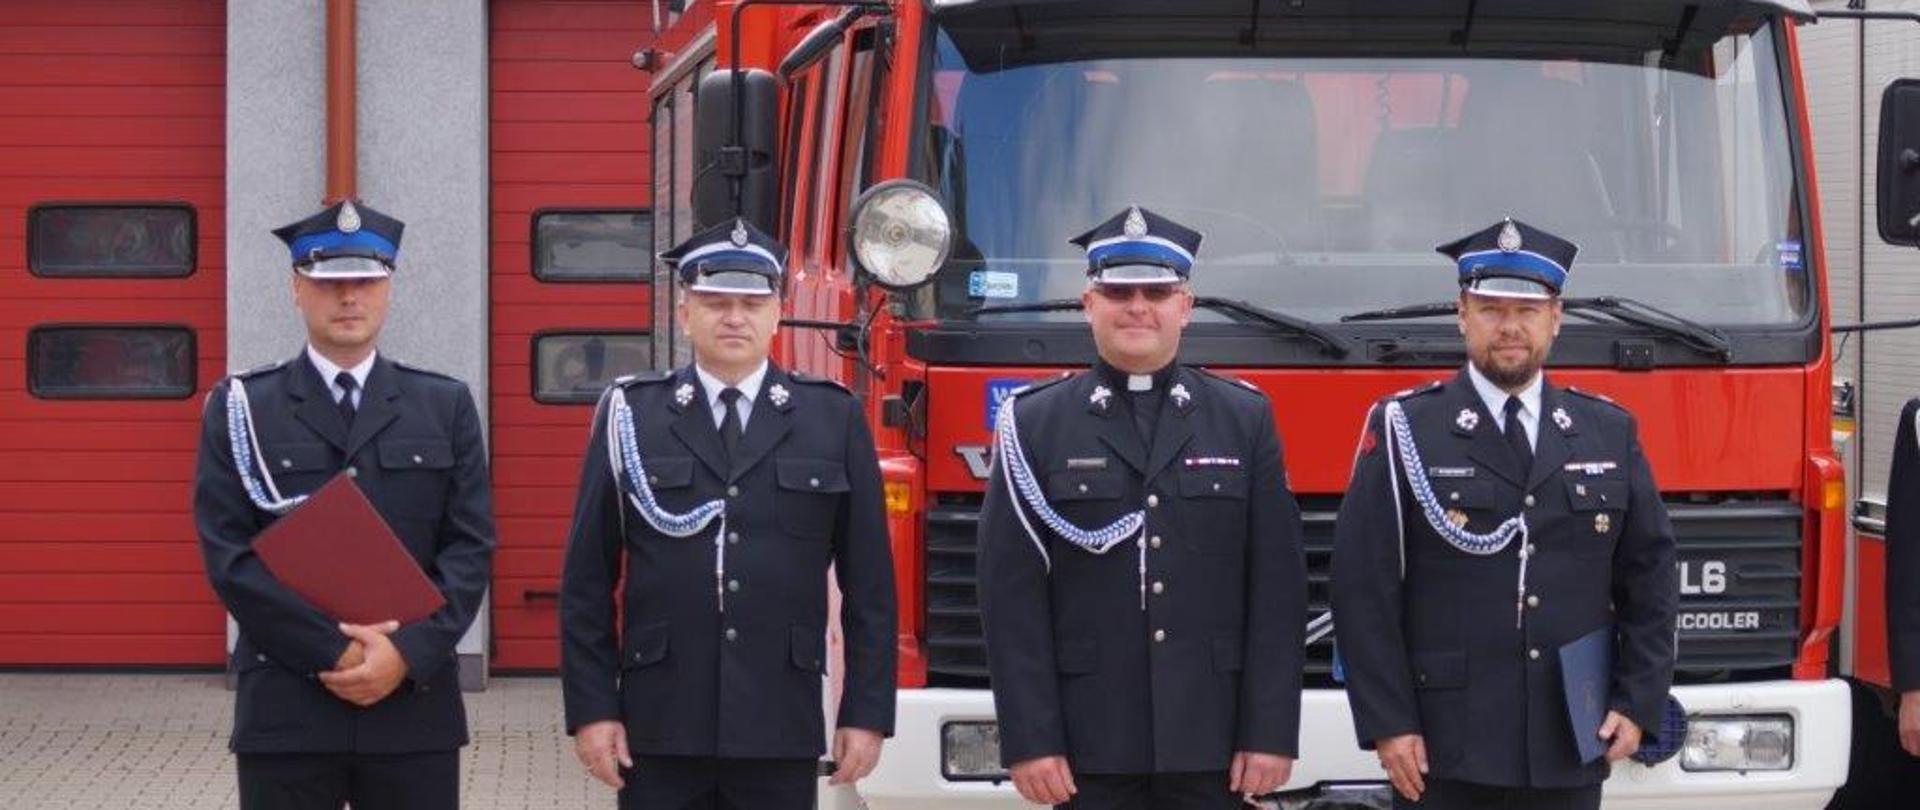 Czterech strażaków ubranych w mundury wyjściowe stoi w szeregu na baczność na tle samochodu ratowniczo-gaśniczego. Dwóch z nich w dłoniach trzyma teczki z dokumentami.